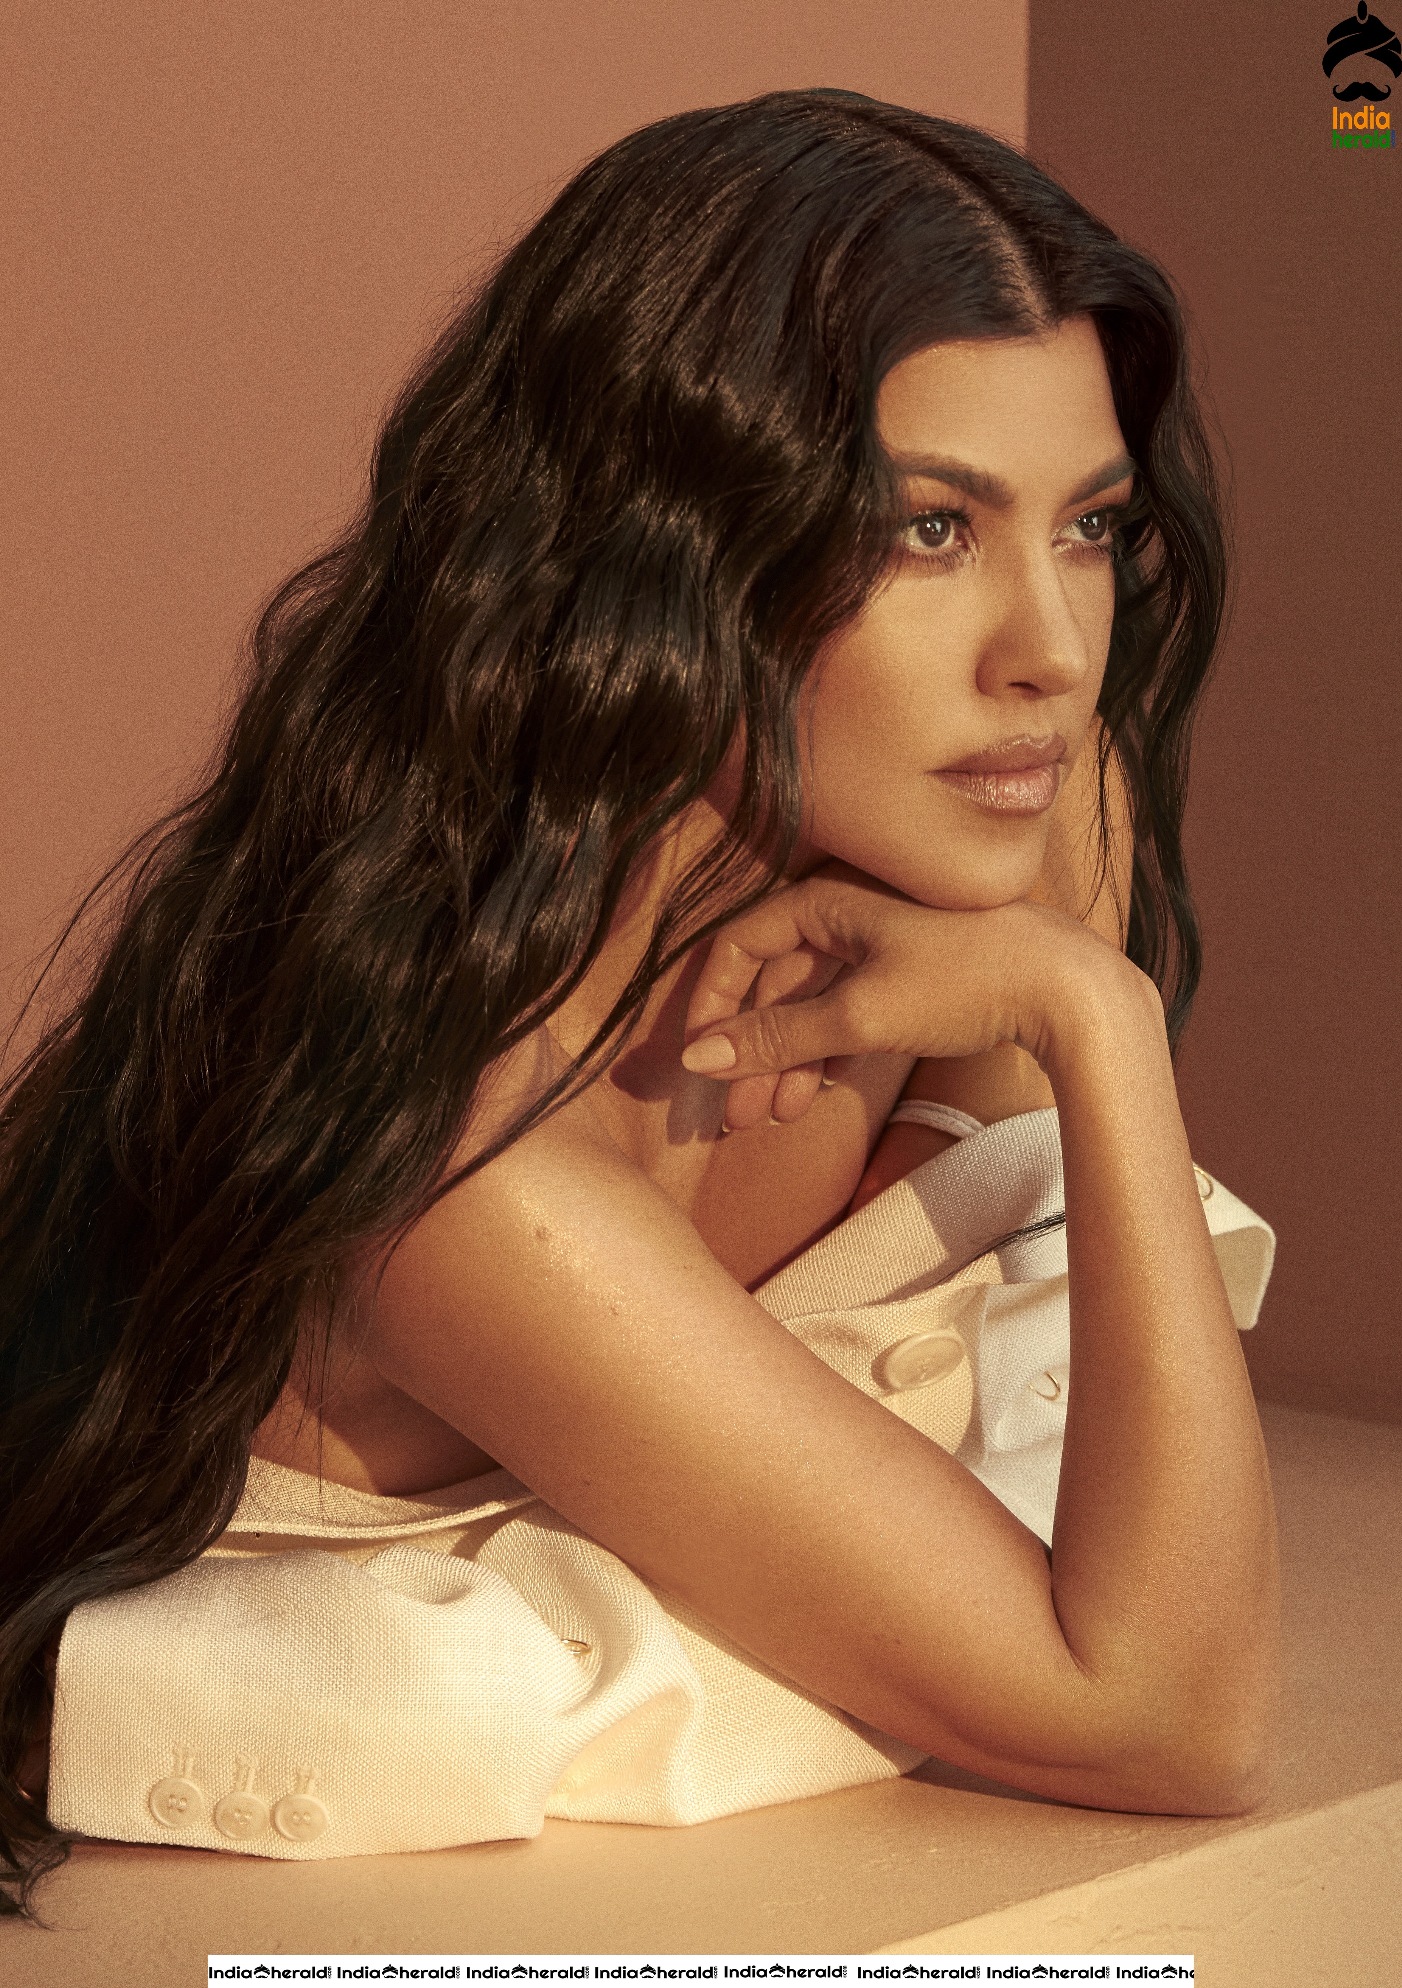 Kourtney Kardashian Poses Sensuous and Sexy for HEALTH Magazine